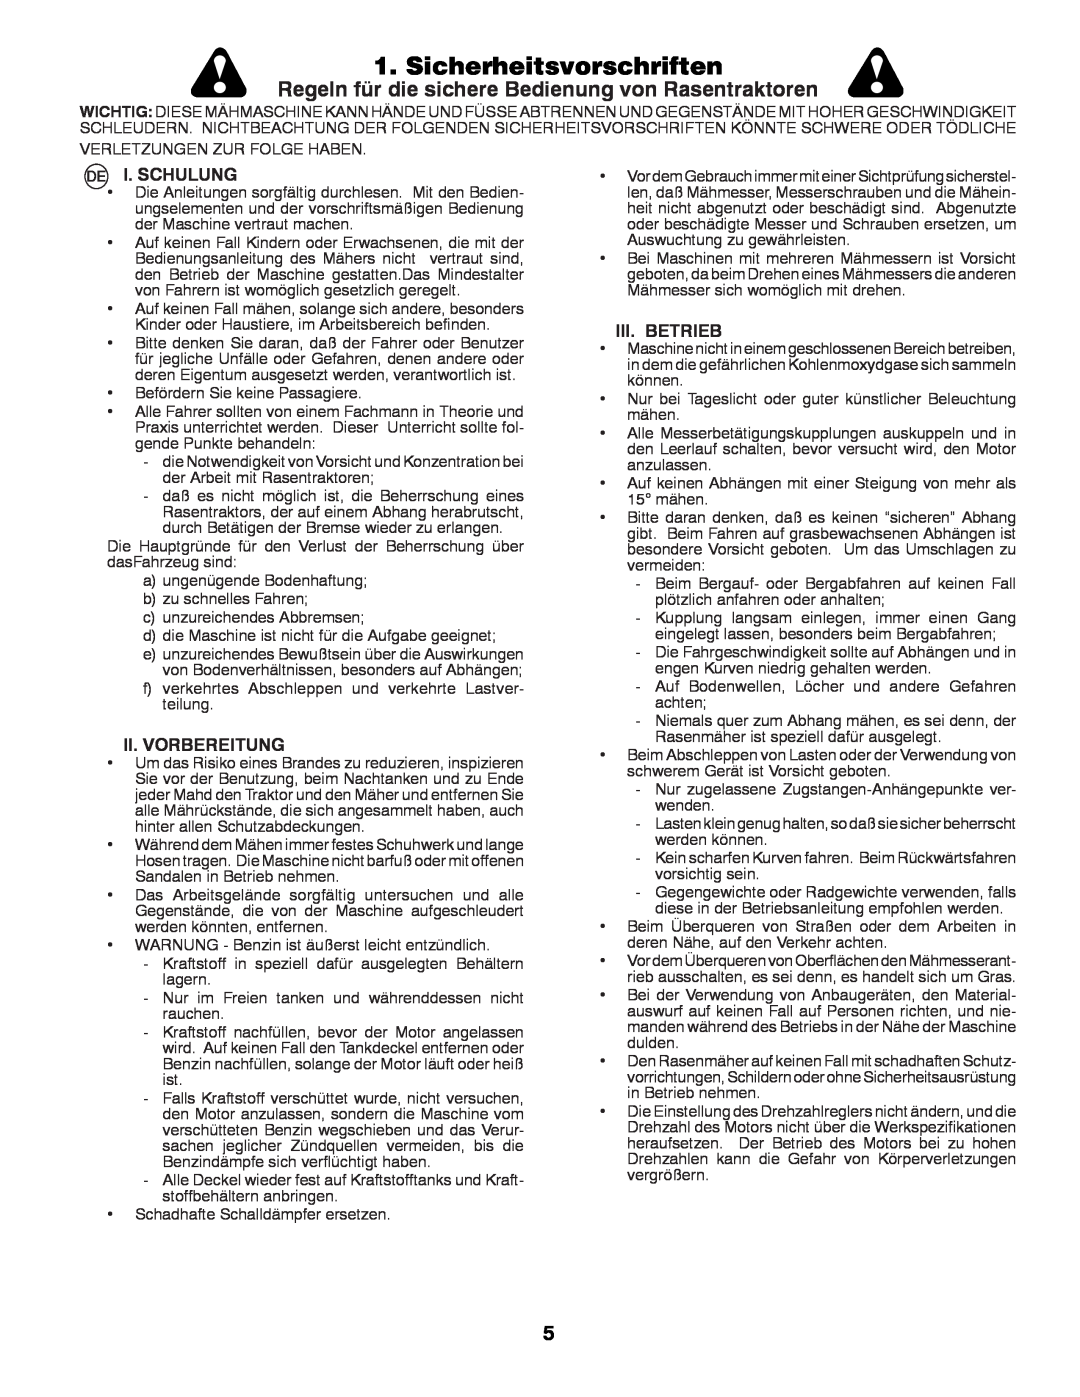 McCulloch 532 43 29-74 manual Sicherheitsvorschriften, Regeln für die sichere Bedienung von Rasentraktoren, I. Schulung 